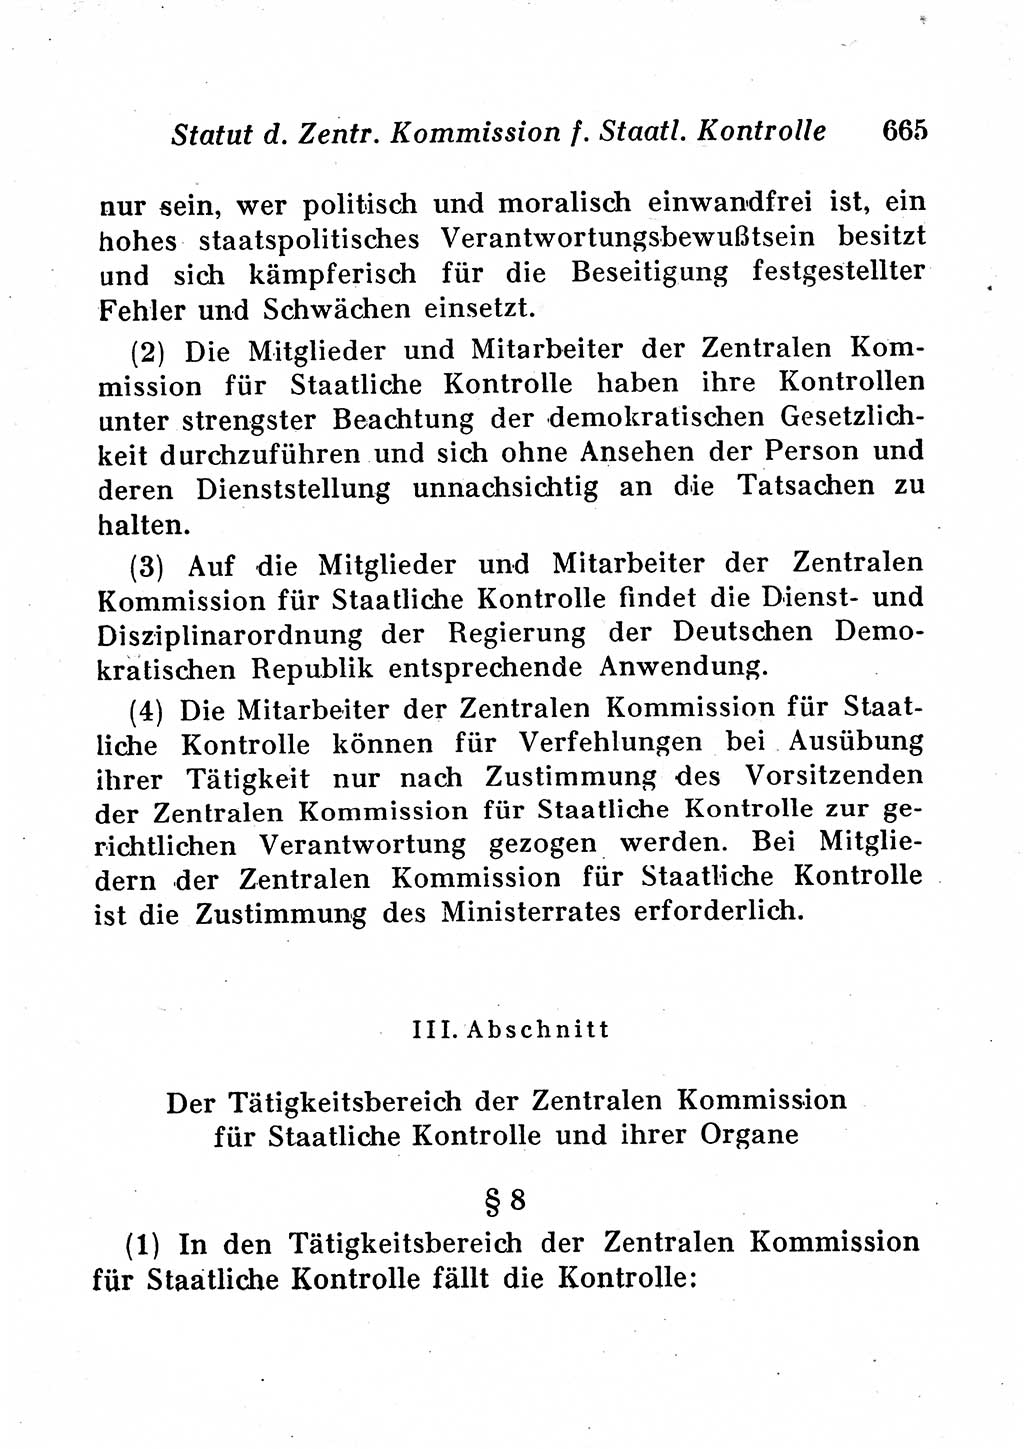 Staats- und verwaltungsrechtliche Gesetze der Deutschen Demokratischen Republik (DDR) 1958, Seite 665 (StVerwR Ges. DDR 1958, S. 665)